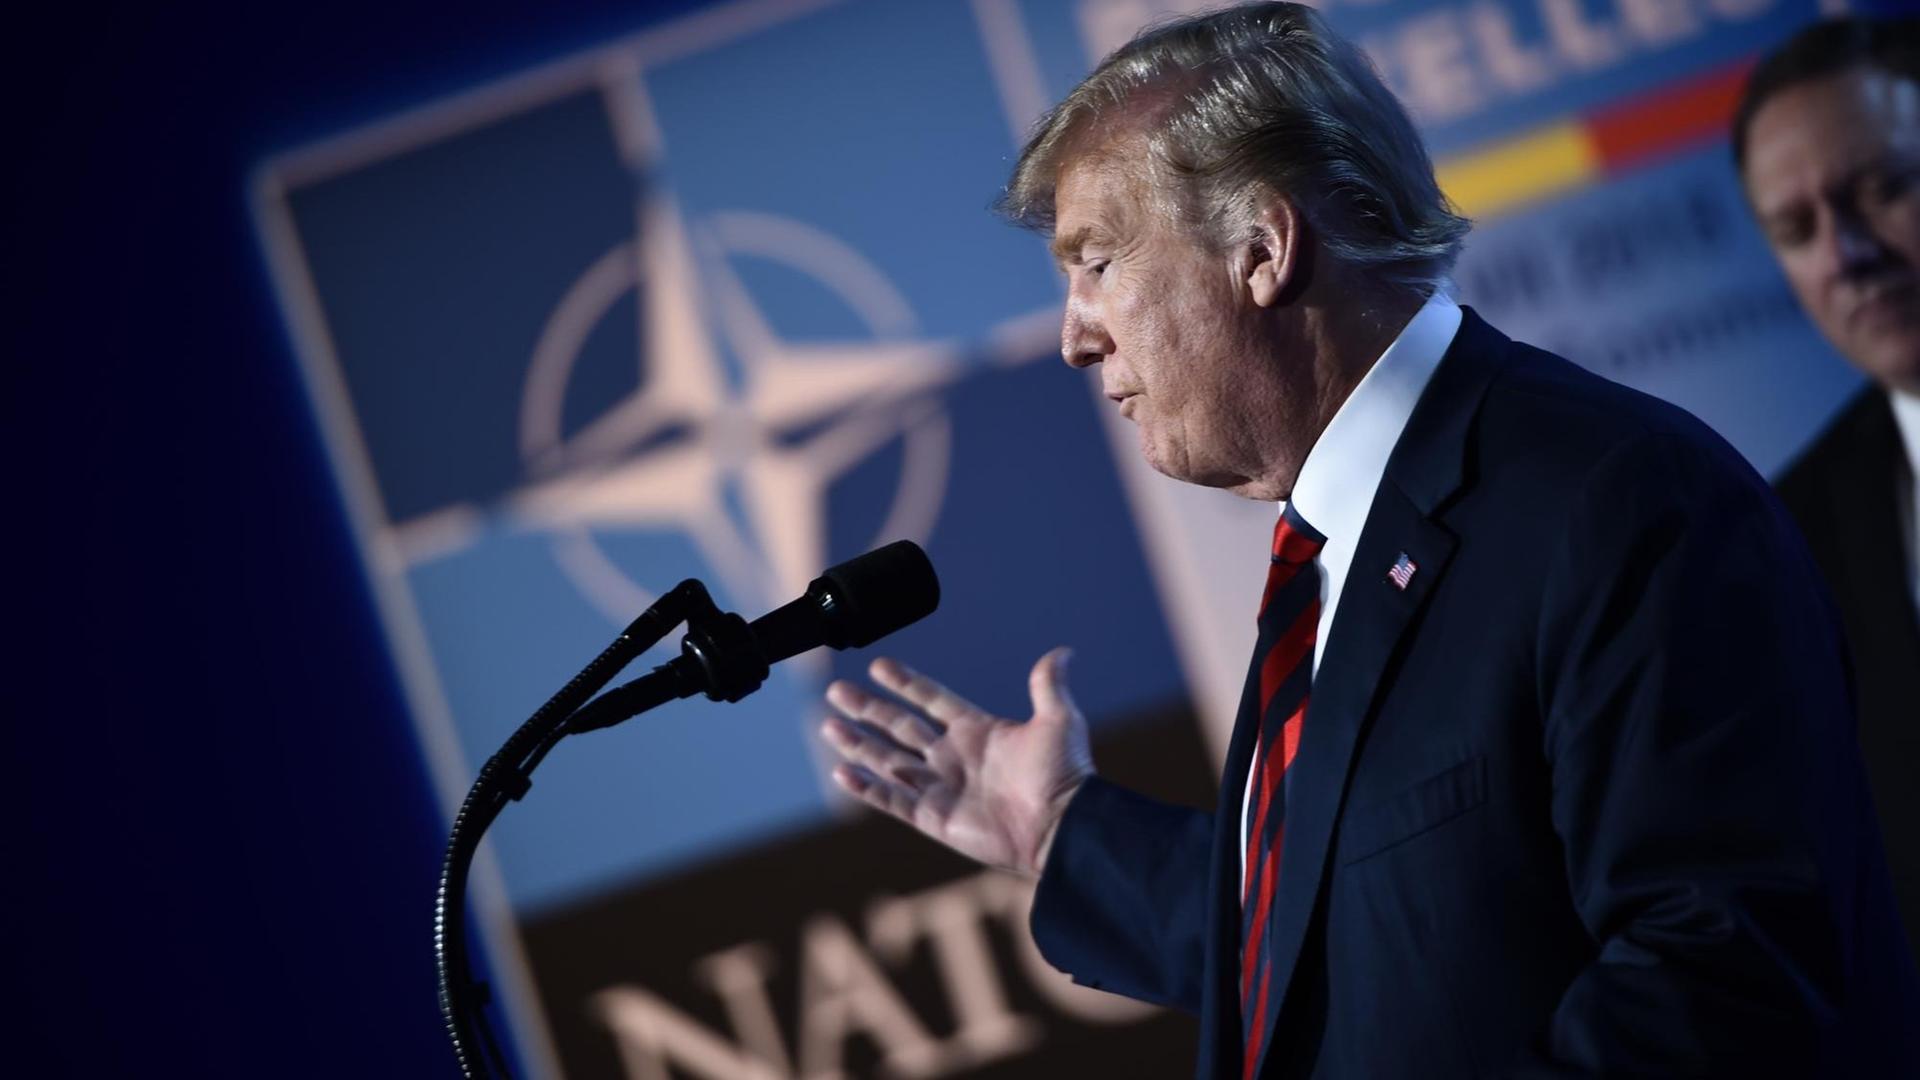 US-Präsident Trump spricht beim NATO-Gipfel in Brüssel.